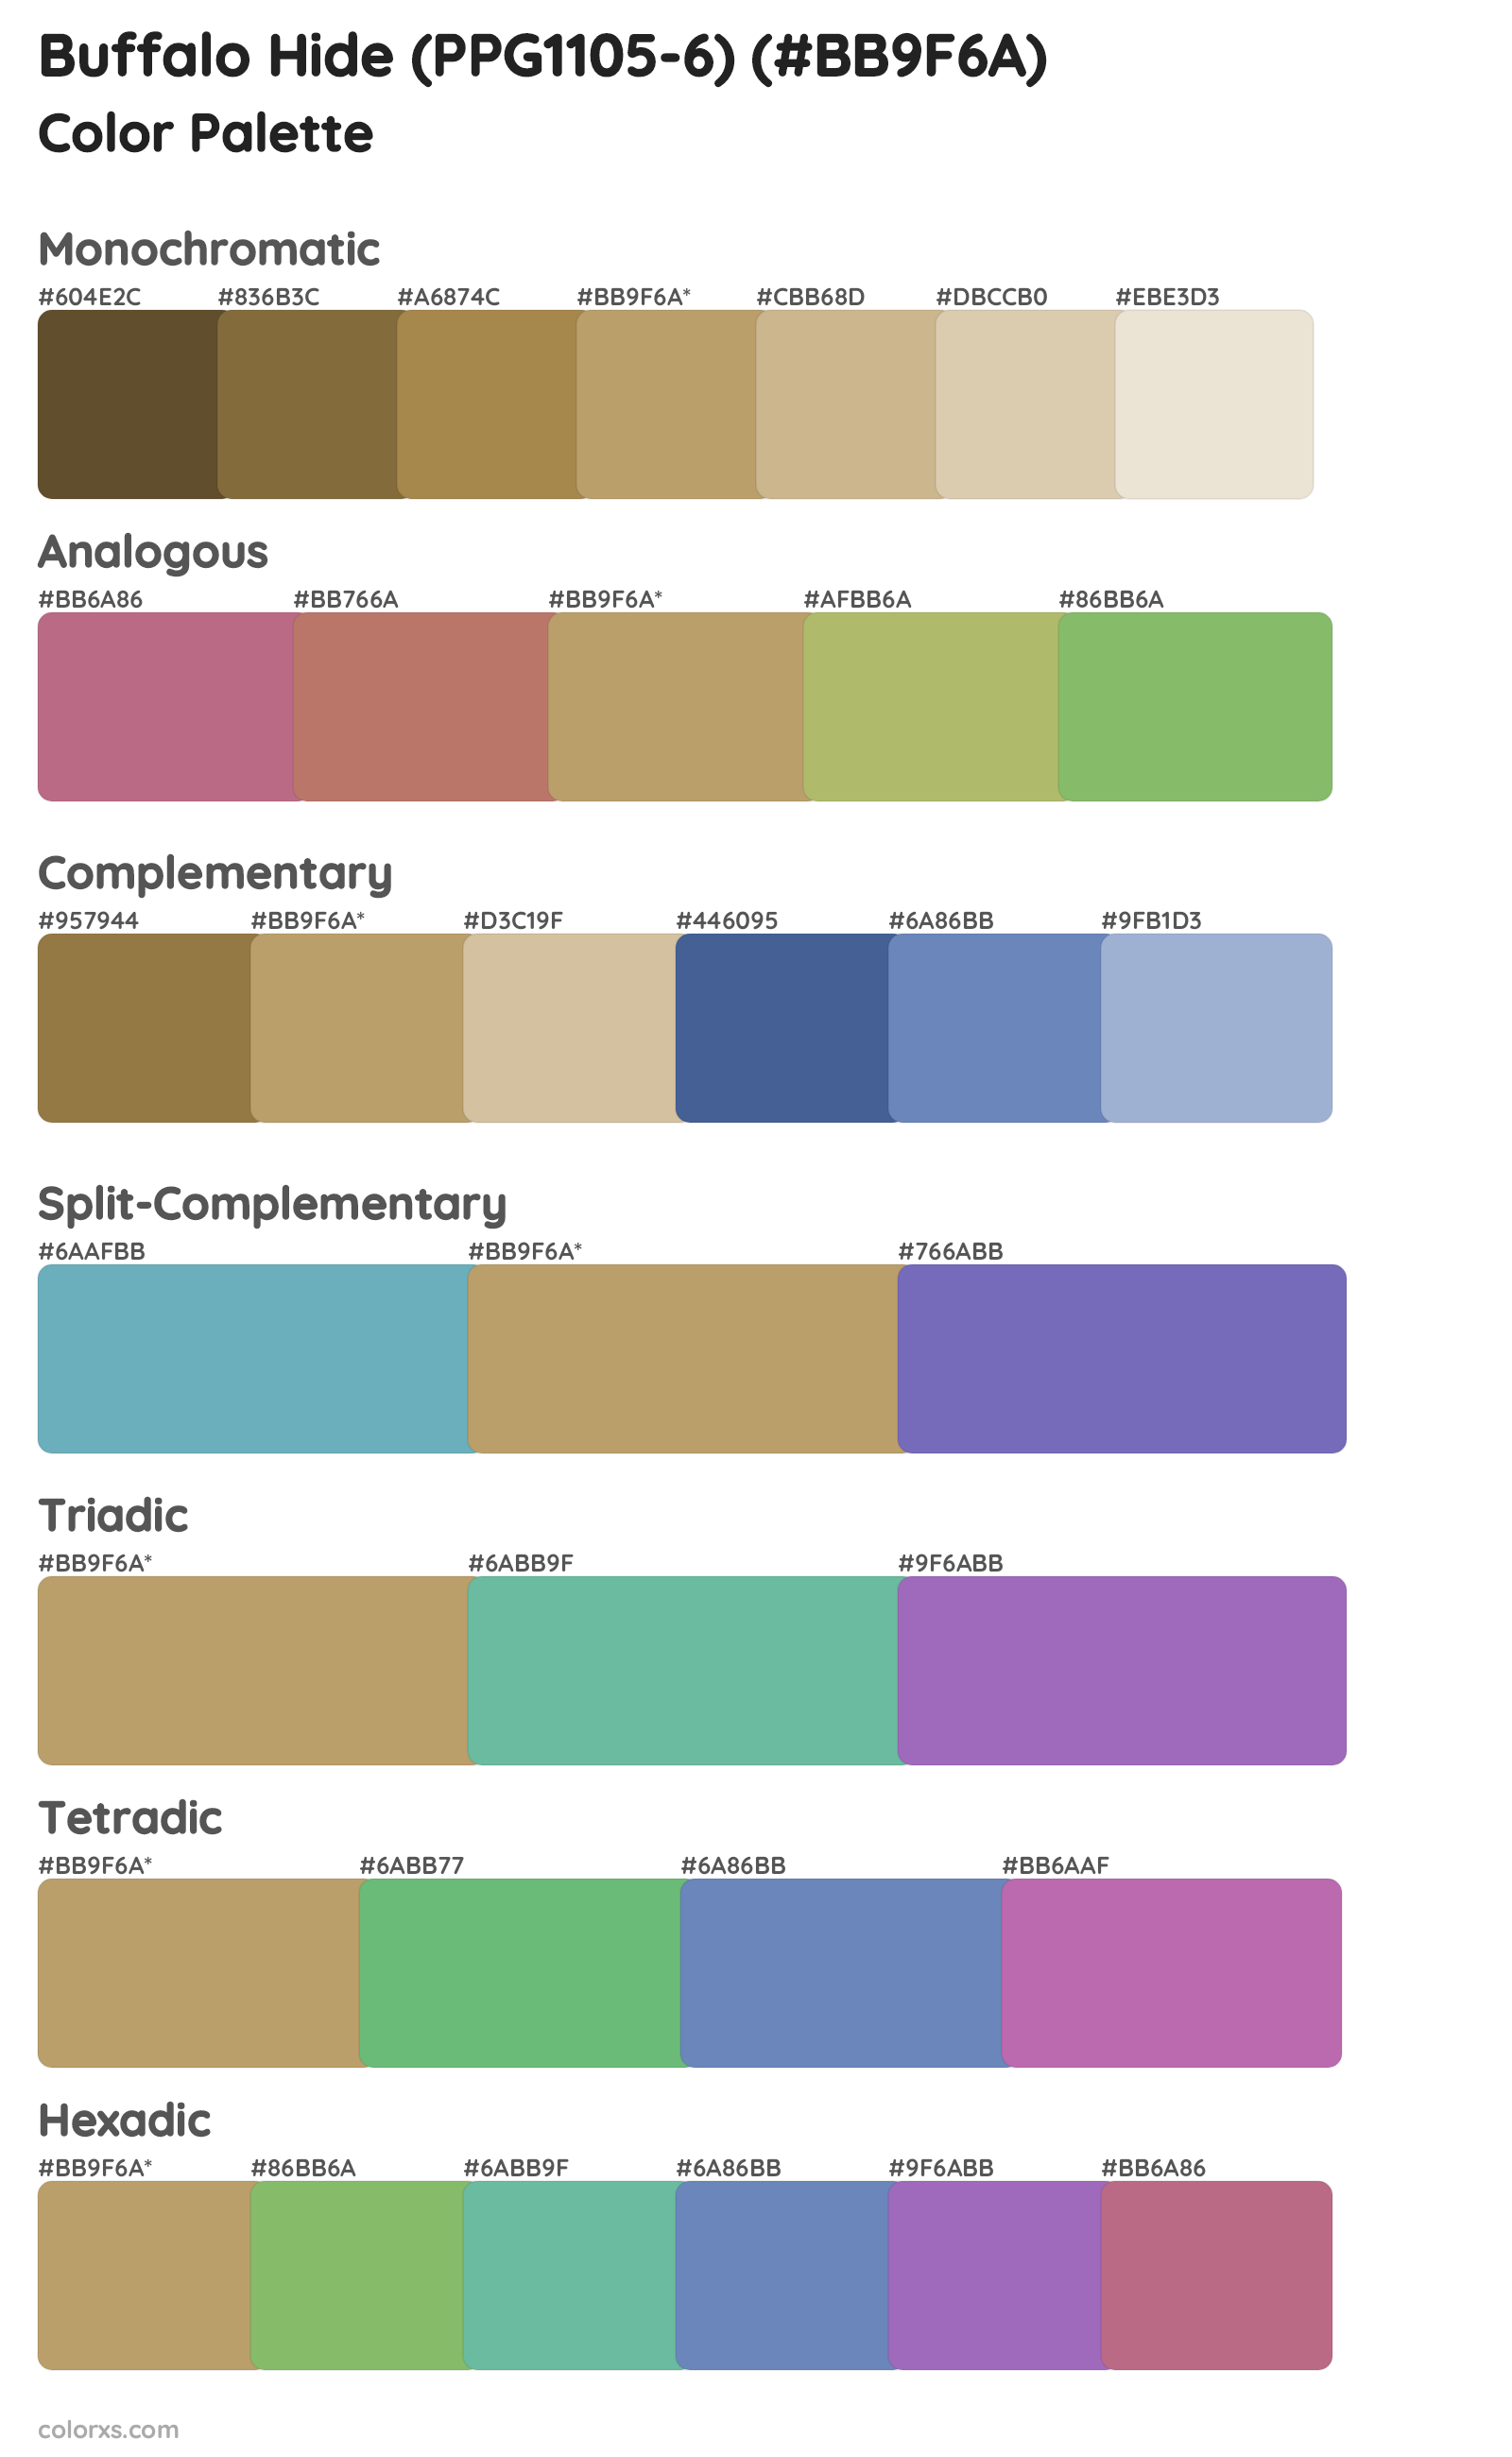 Buffalo Hide (PPG1105-6) Color Scheme Palettes